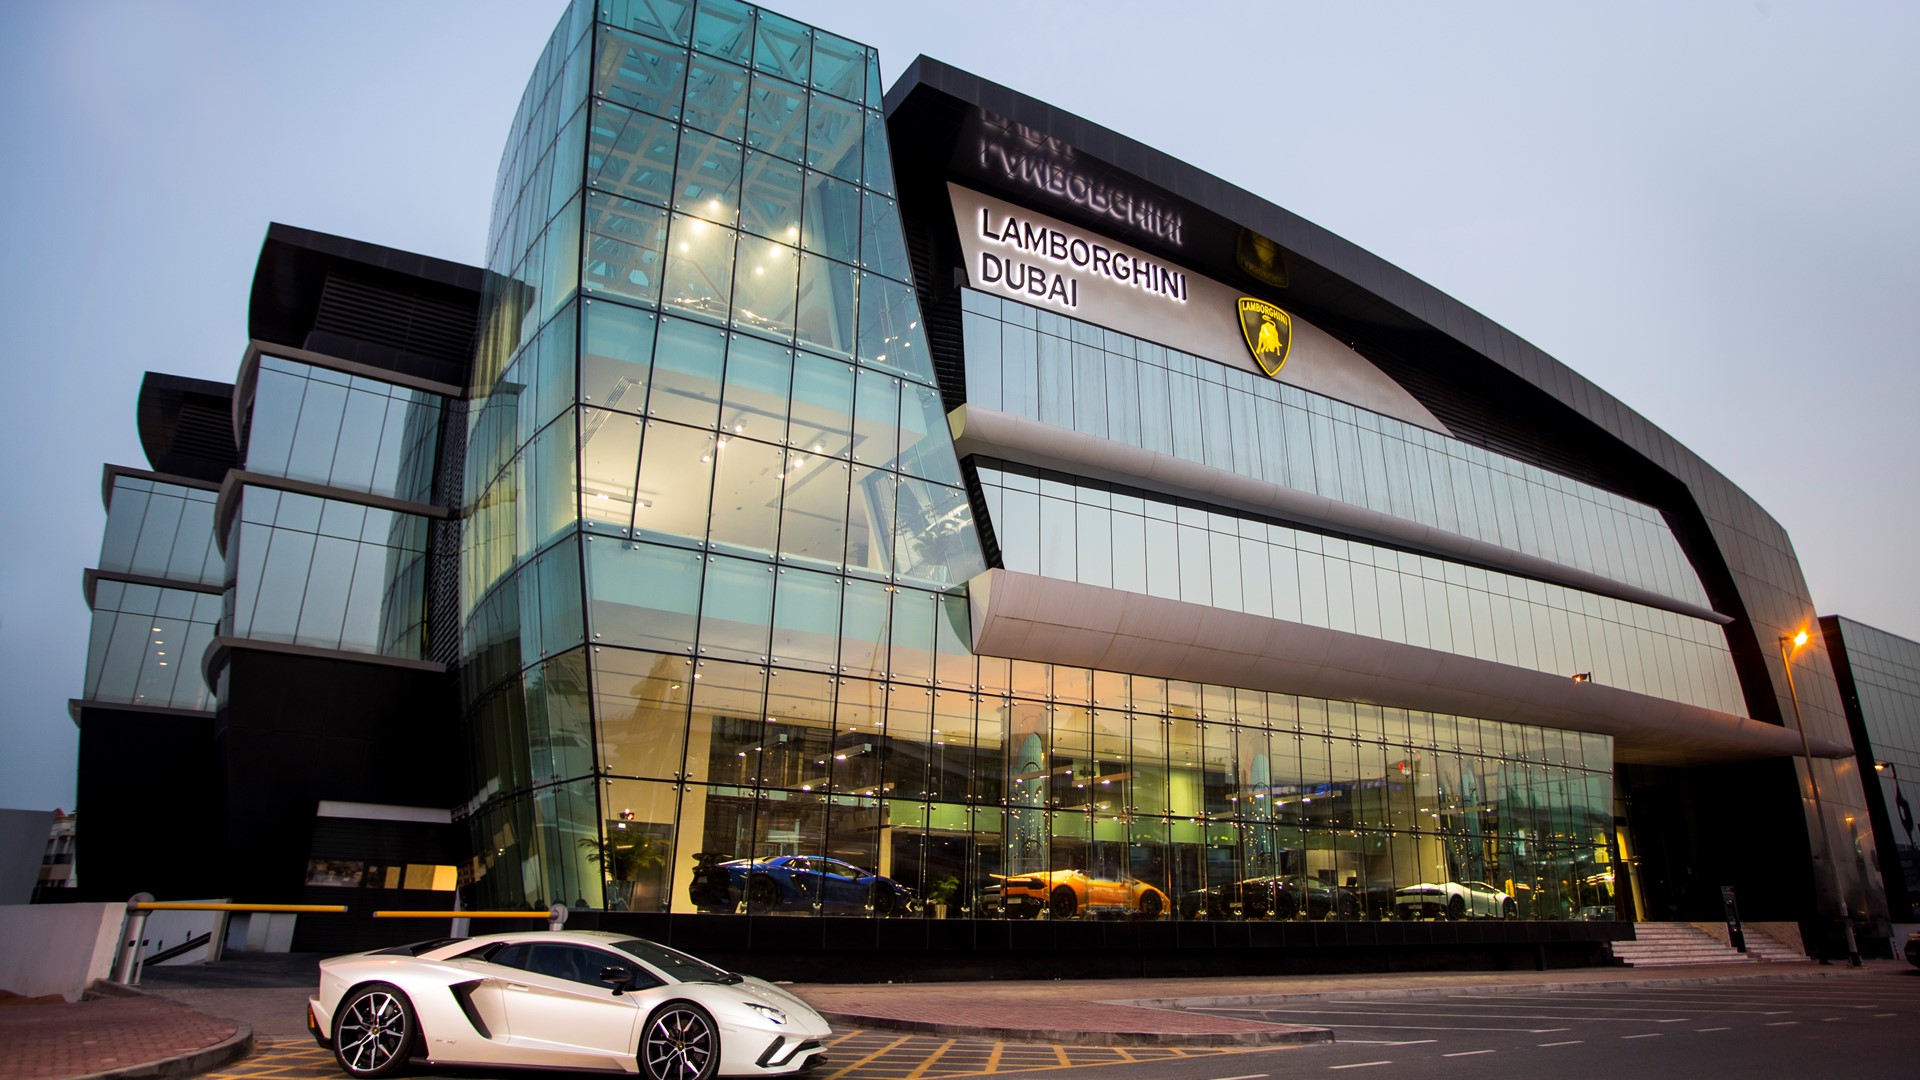 Lamborghini Dubai Showroom - exterior